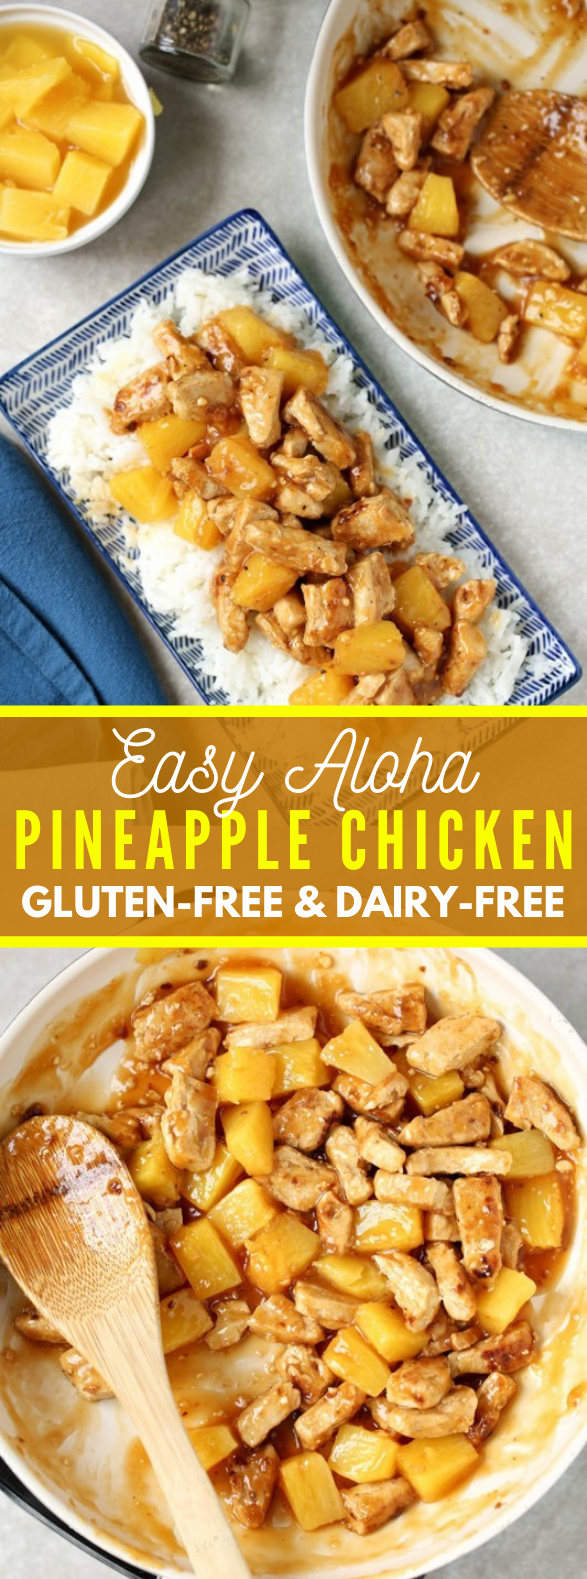 Easy Aloha Pineapple Chicken #dinner #easychicken